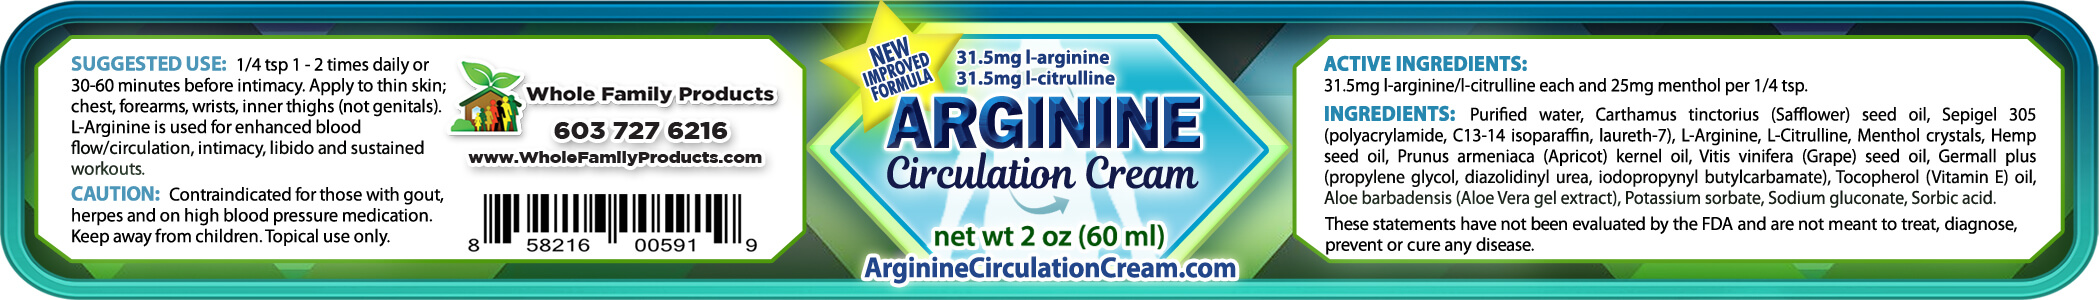 ARGININE CIRCULATION CREAM 2 oz Jar Product Label